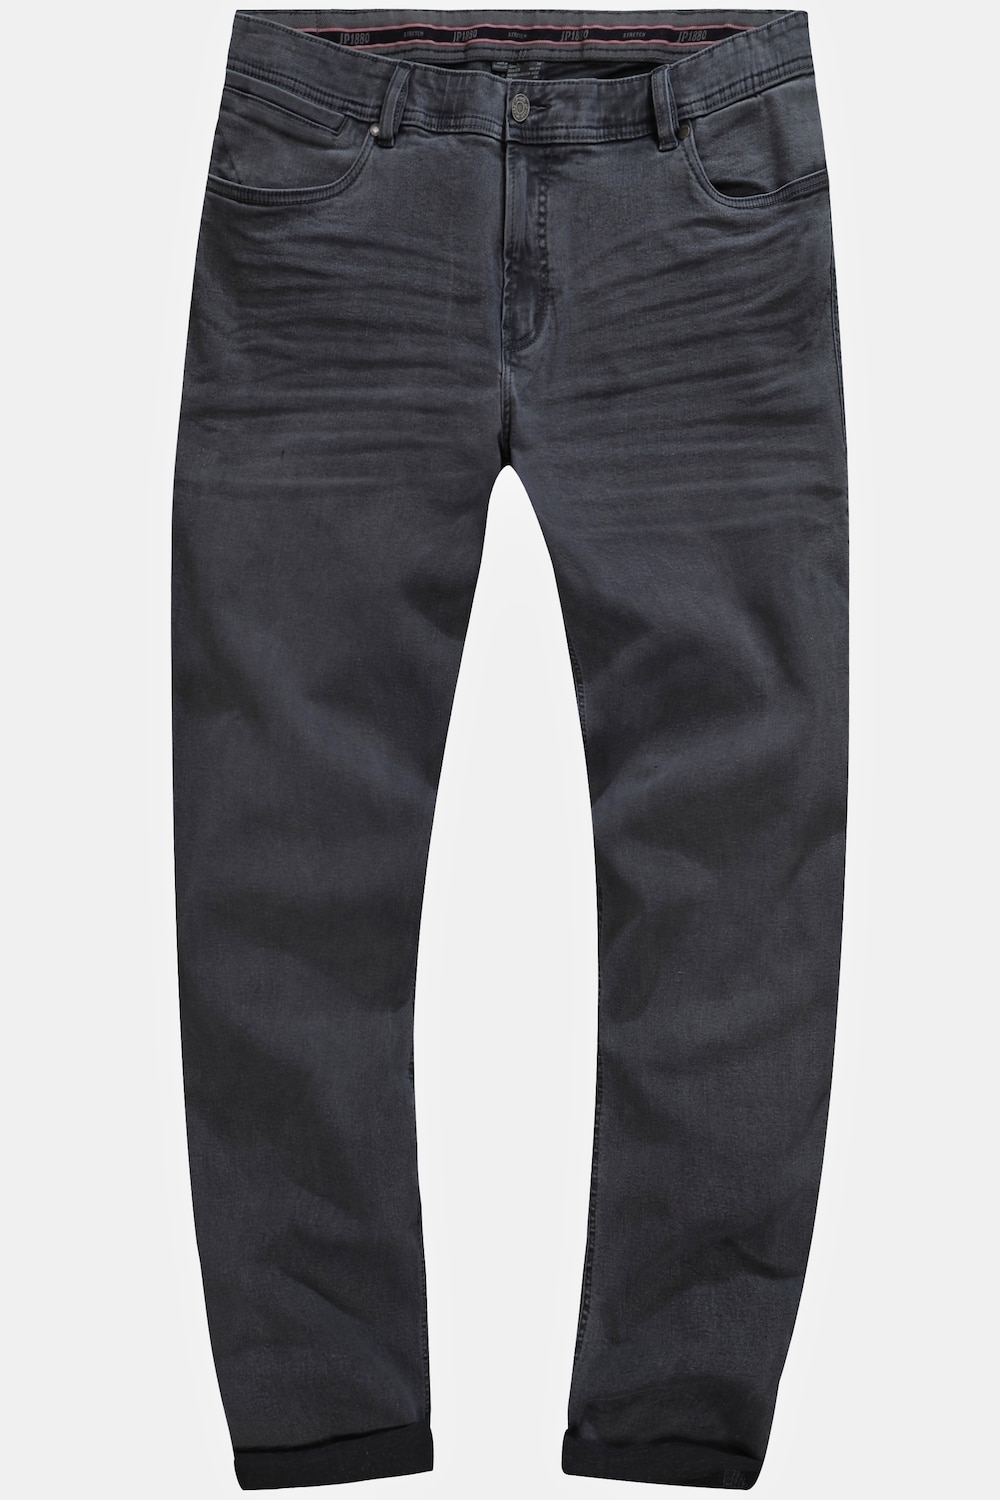 Grote Maten Jeans, Heren, grijs, Maat: 34, Katoen, JP1880